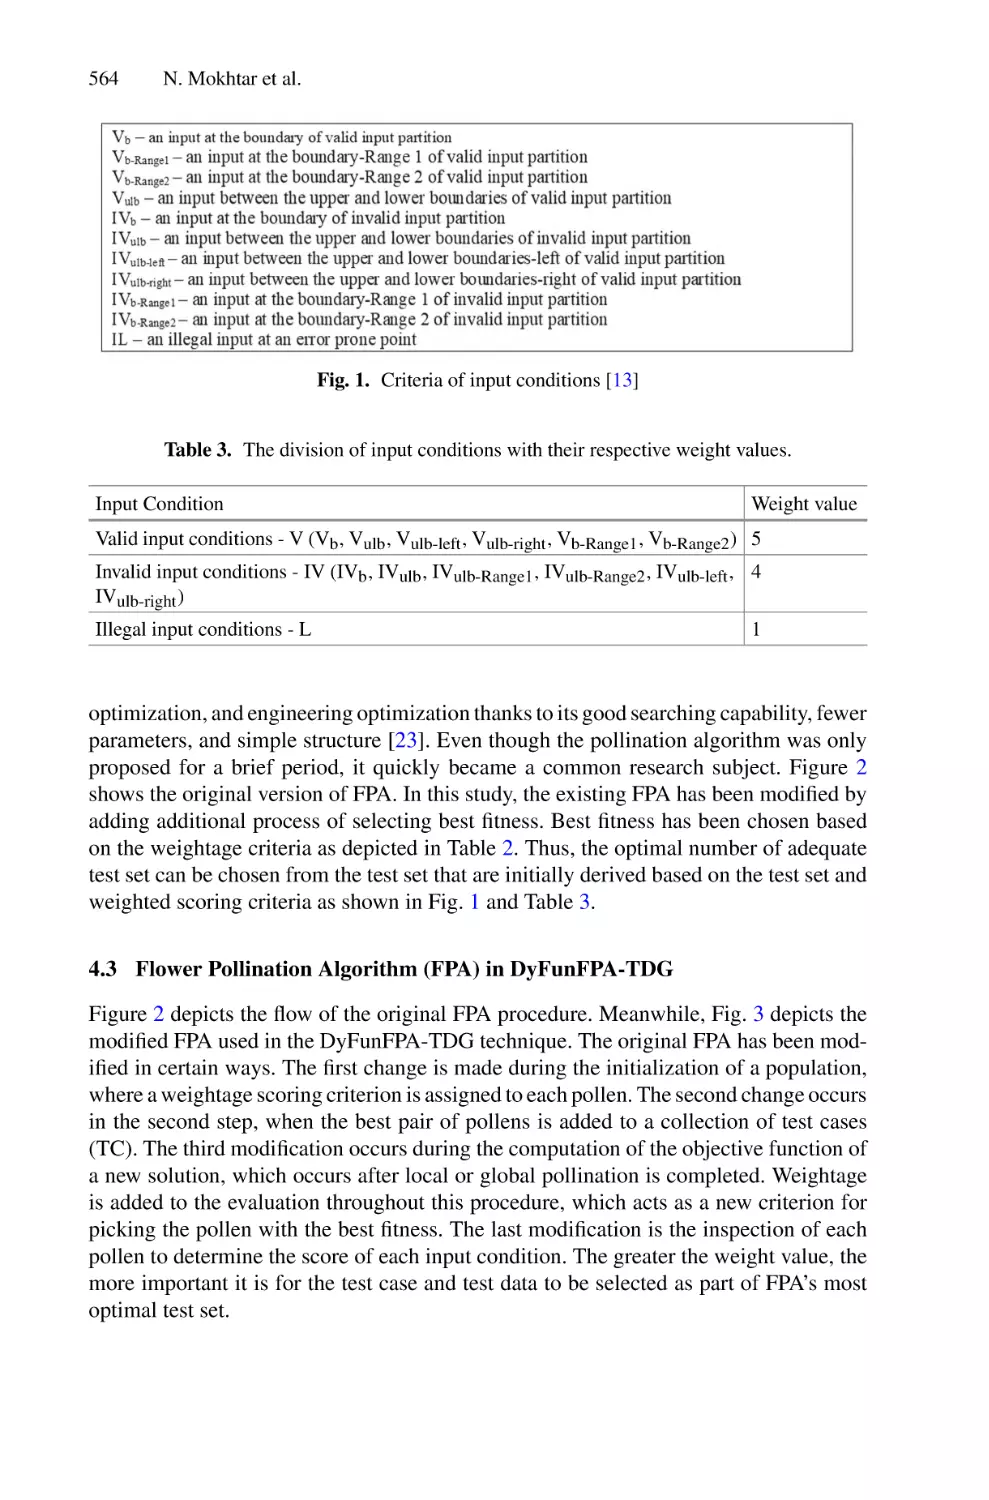 4.3 Flower Pollination Algorithm (FPA) in DyFunFPA-TDG